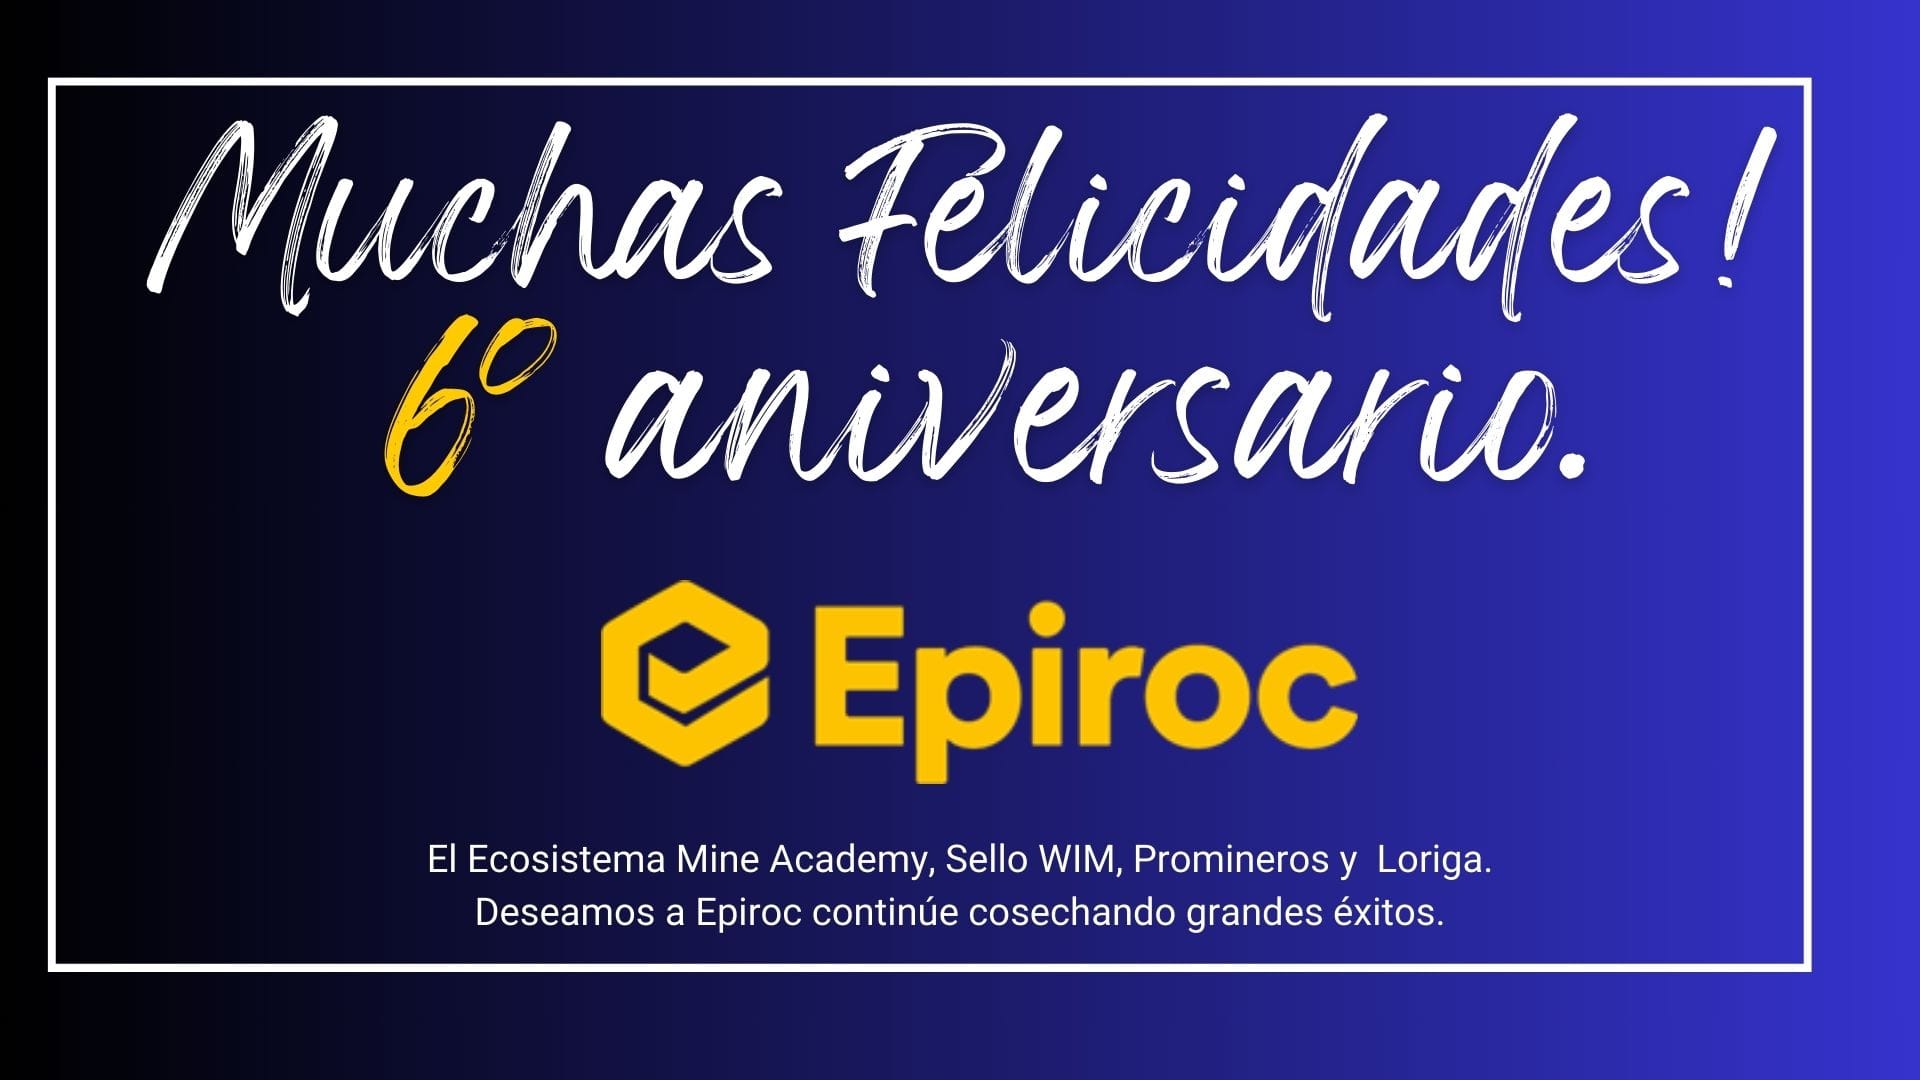 6to Aniversario de Epiroc, en más de 150 años de historia.